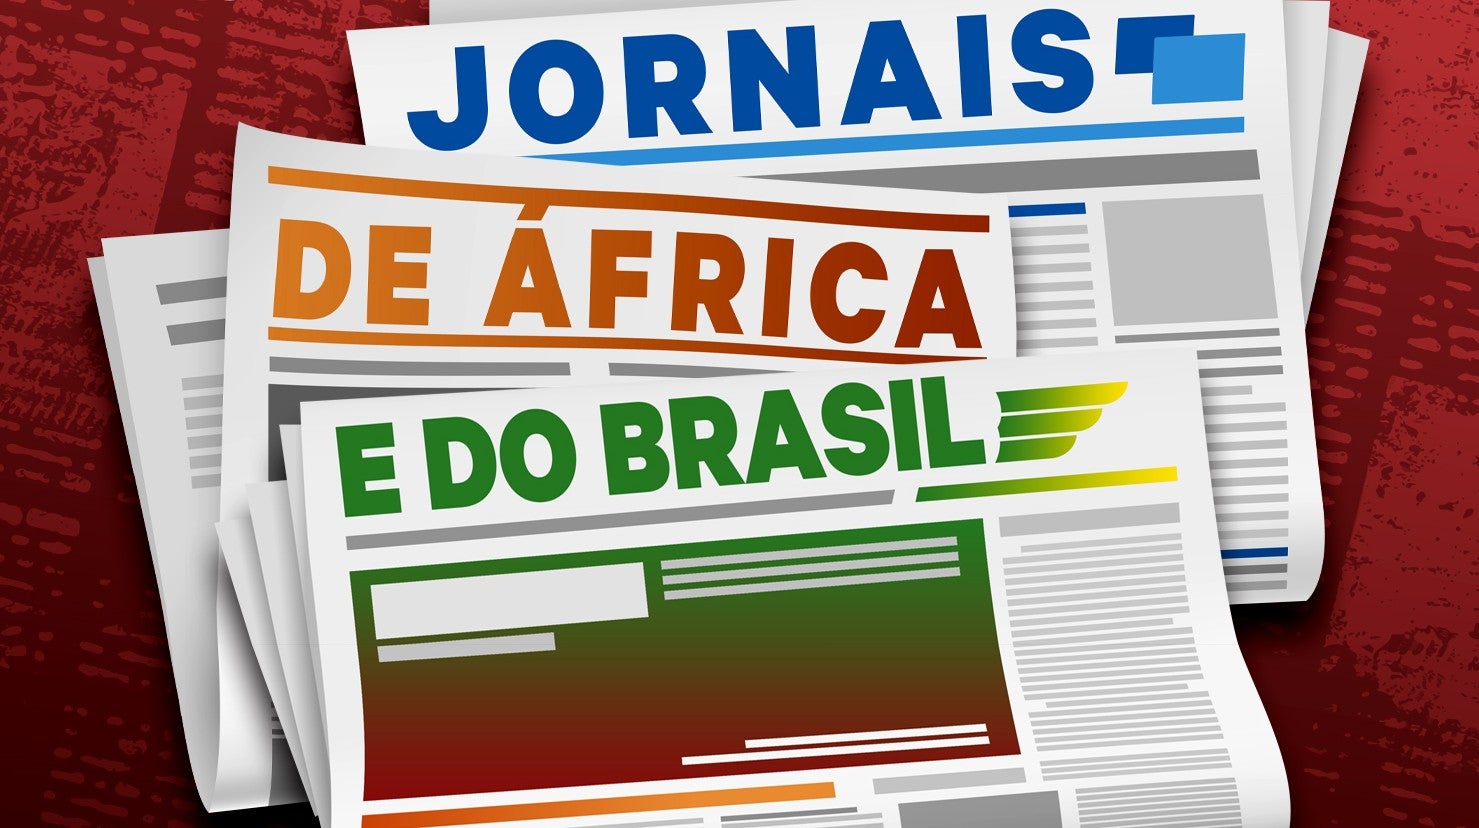 Jornais de frica e Brasil